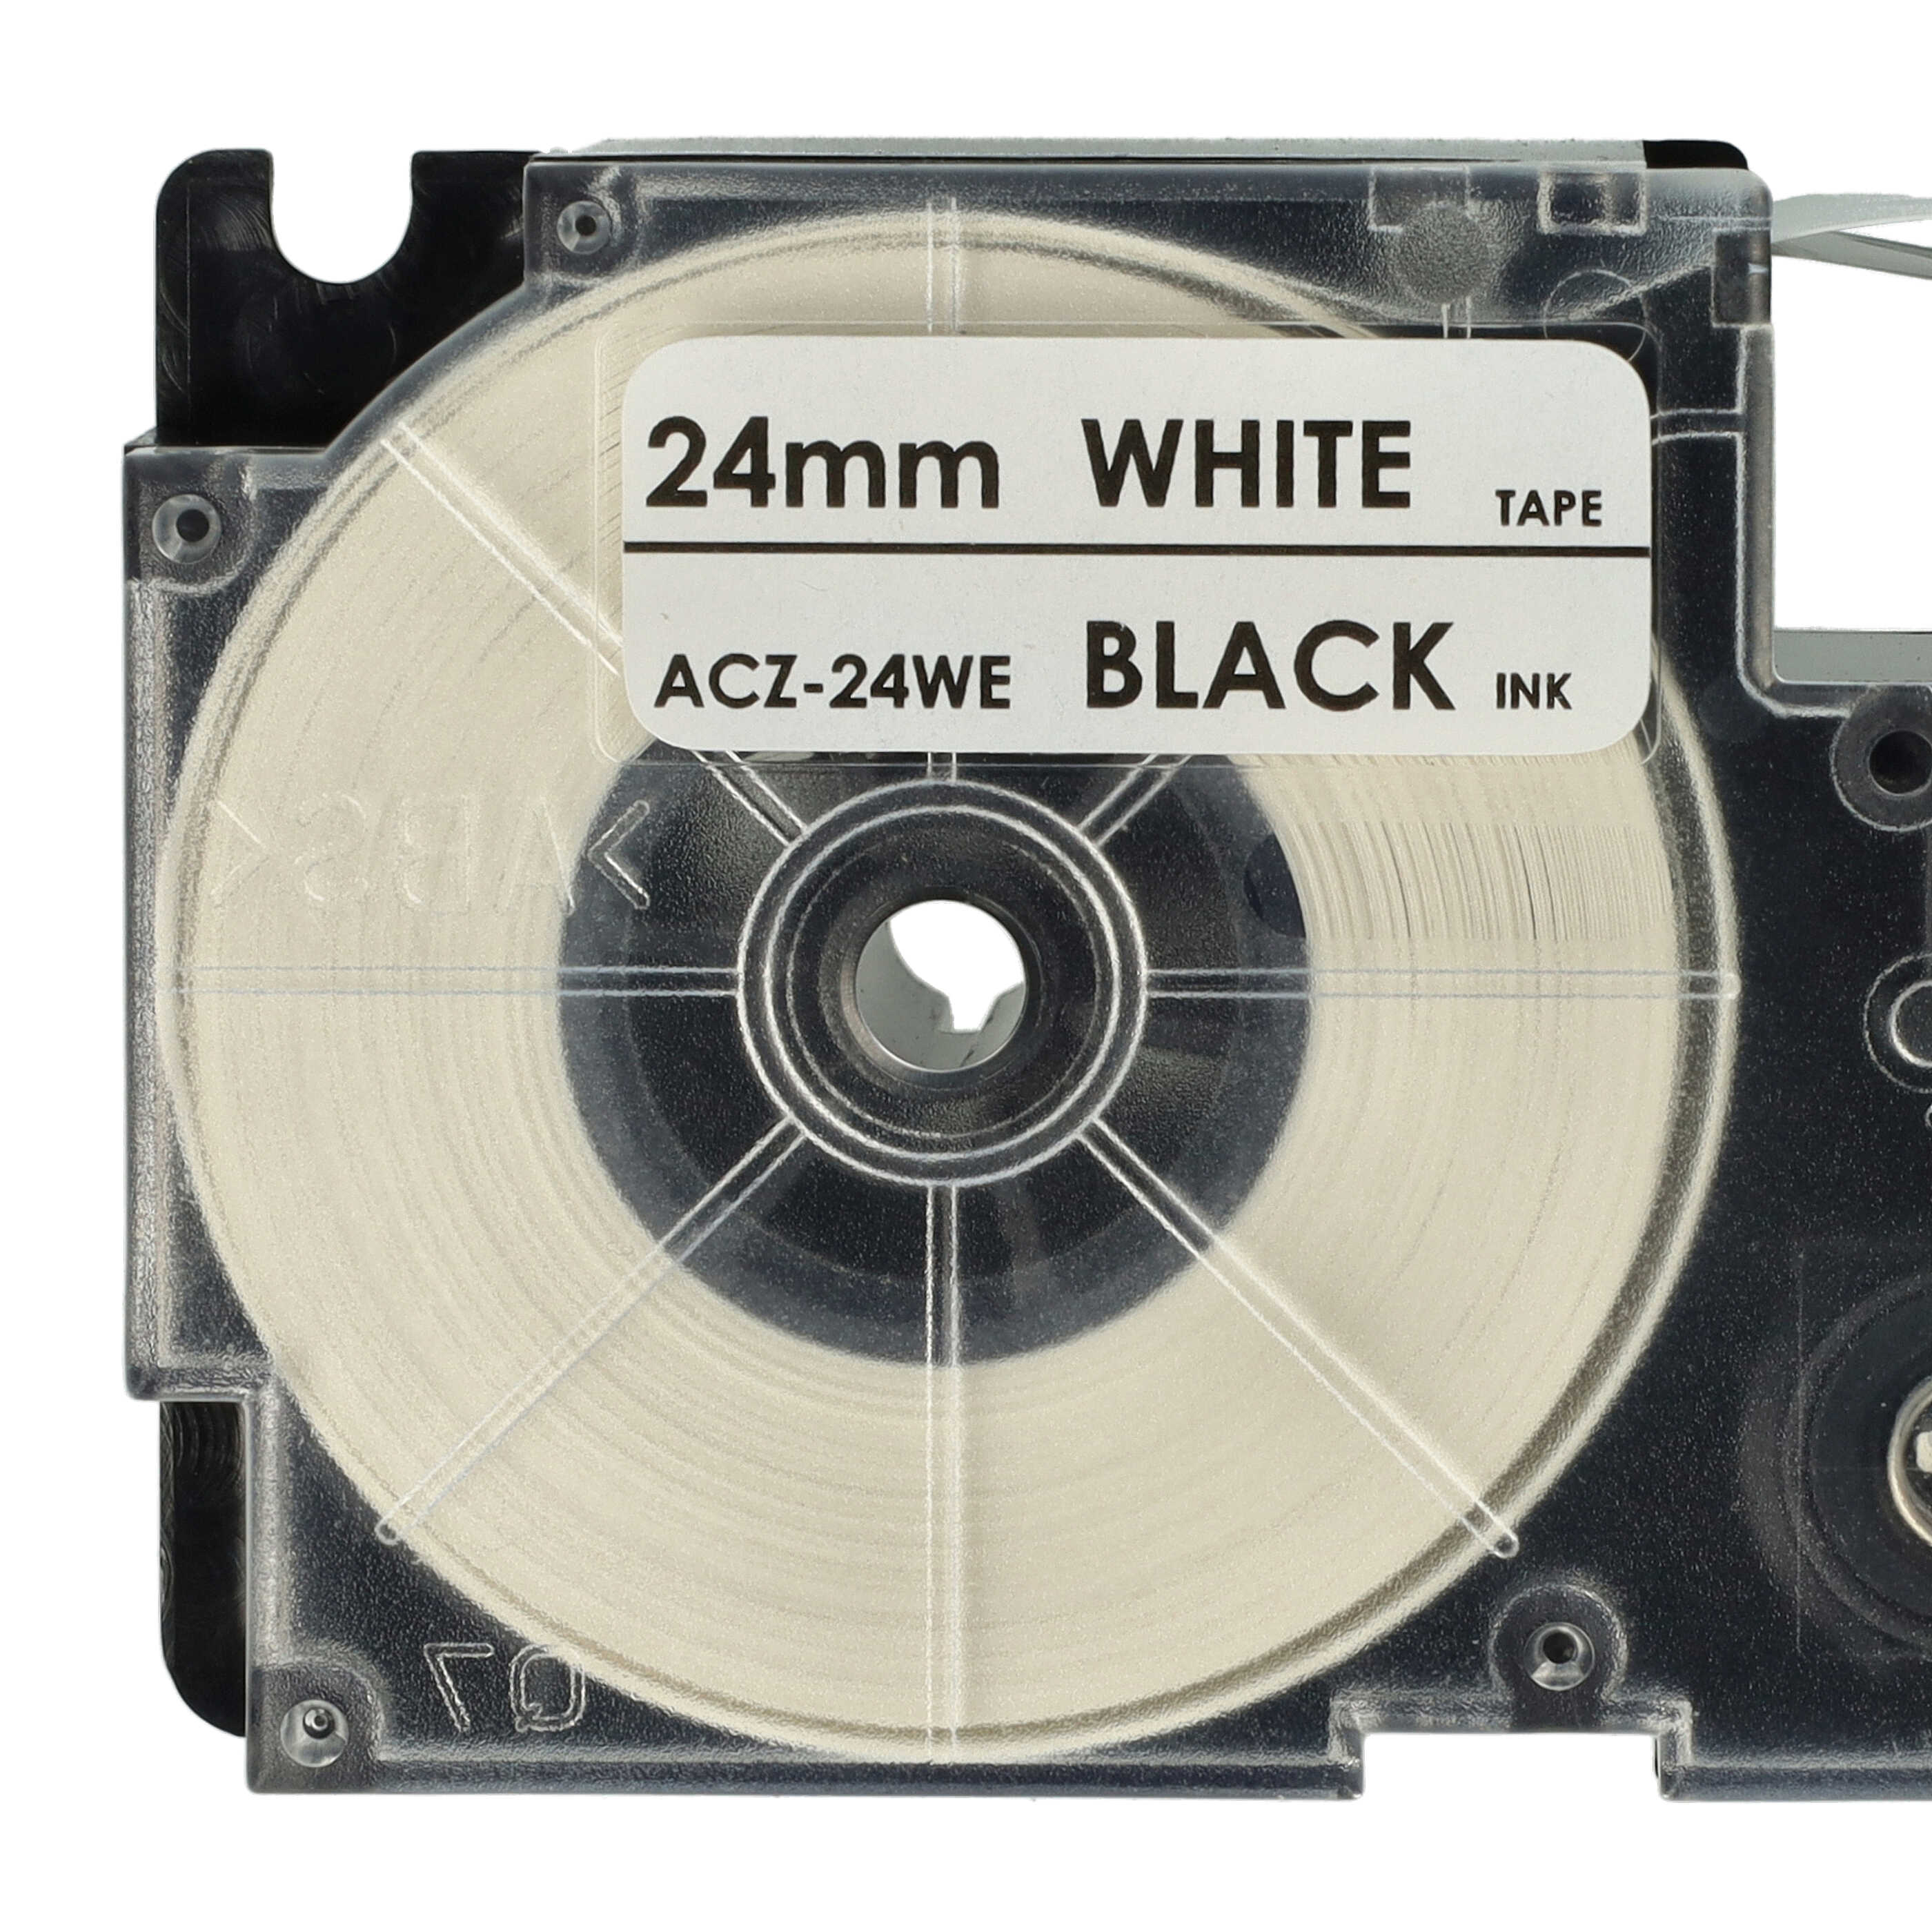 5x Casete cinta escritura reemplaza Casio XR-24WE1 Negro su Blanco